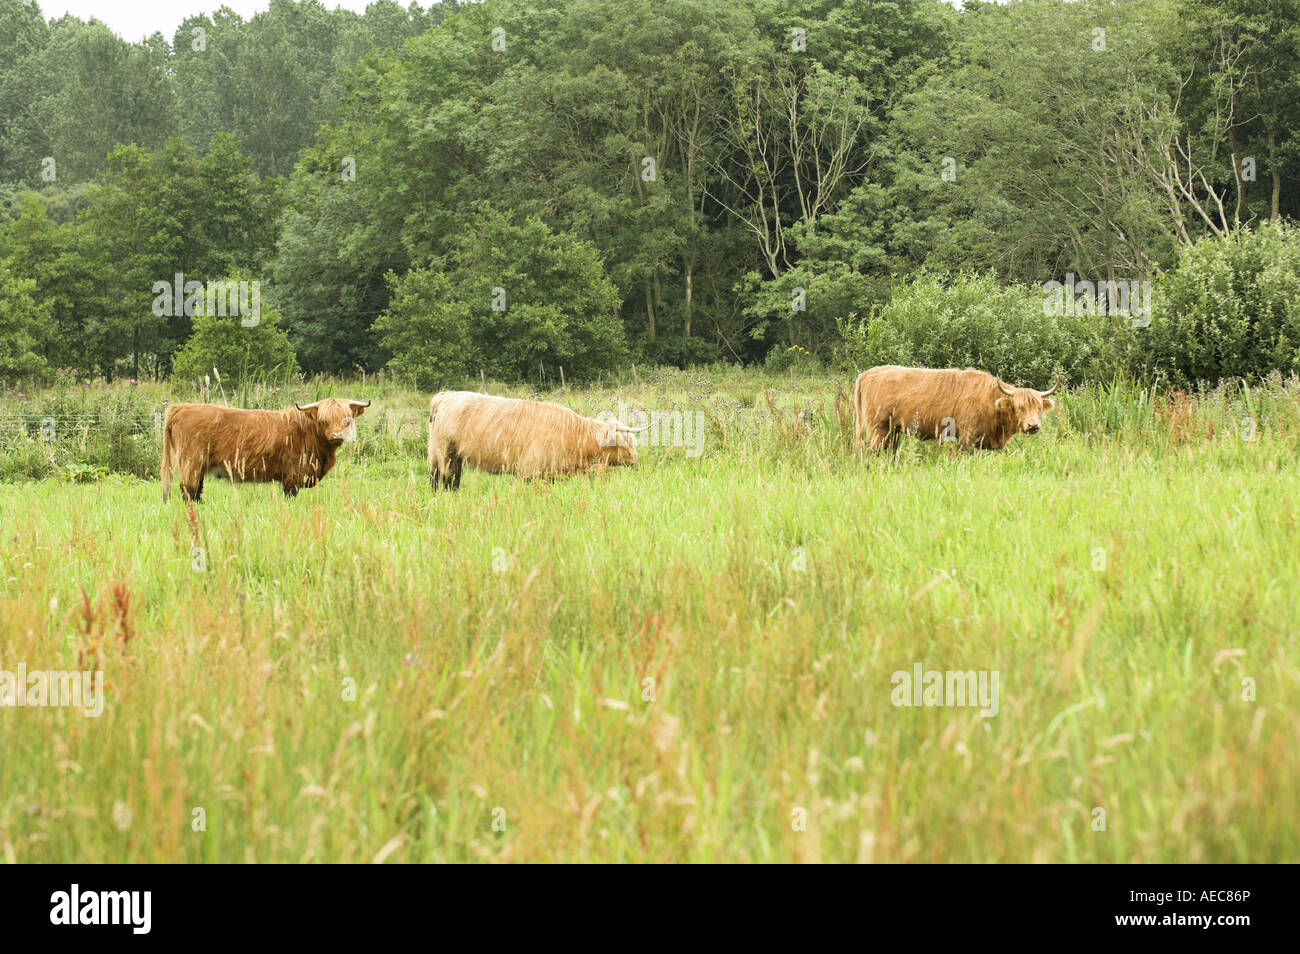 Highland cattle étant utilisé pour gérer l'habitat de pâturage humide dans l'East Anglia Angleterre Juillet Banque D'Images